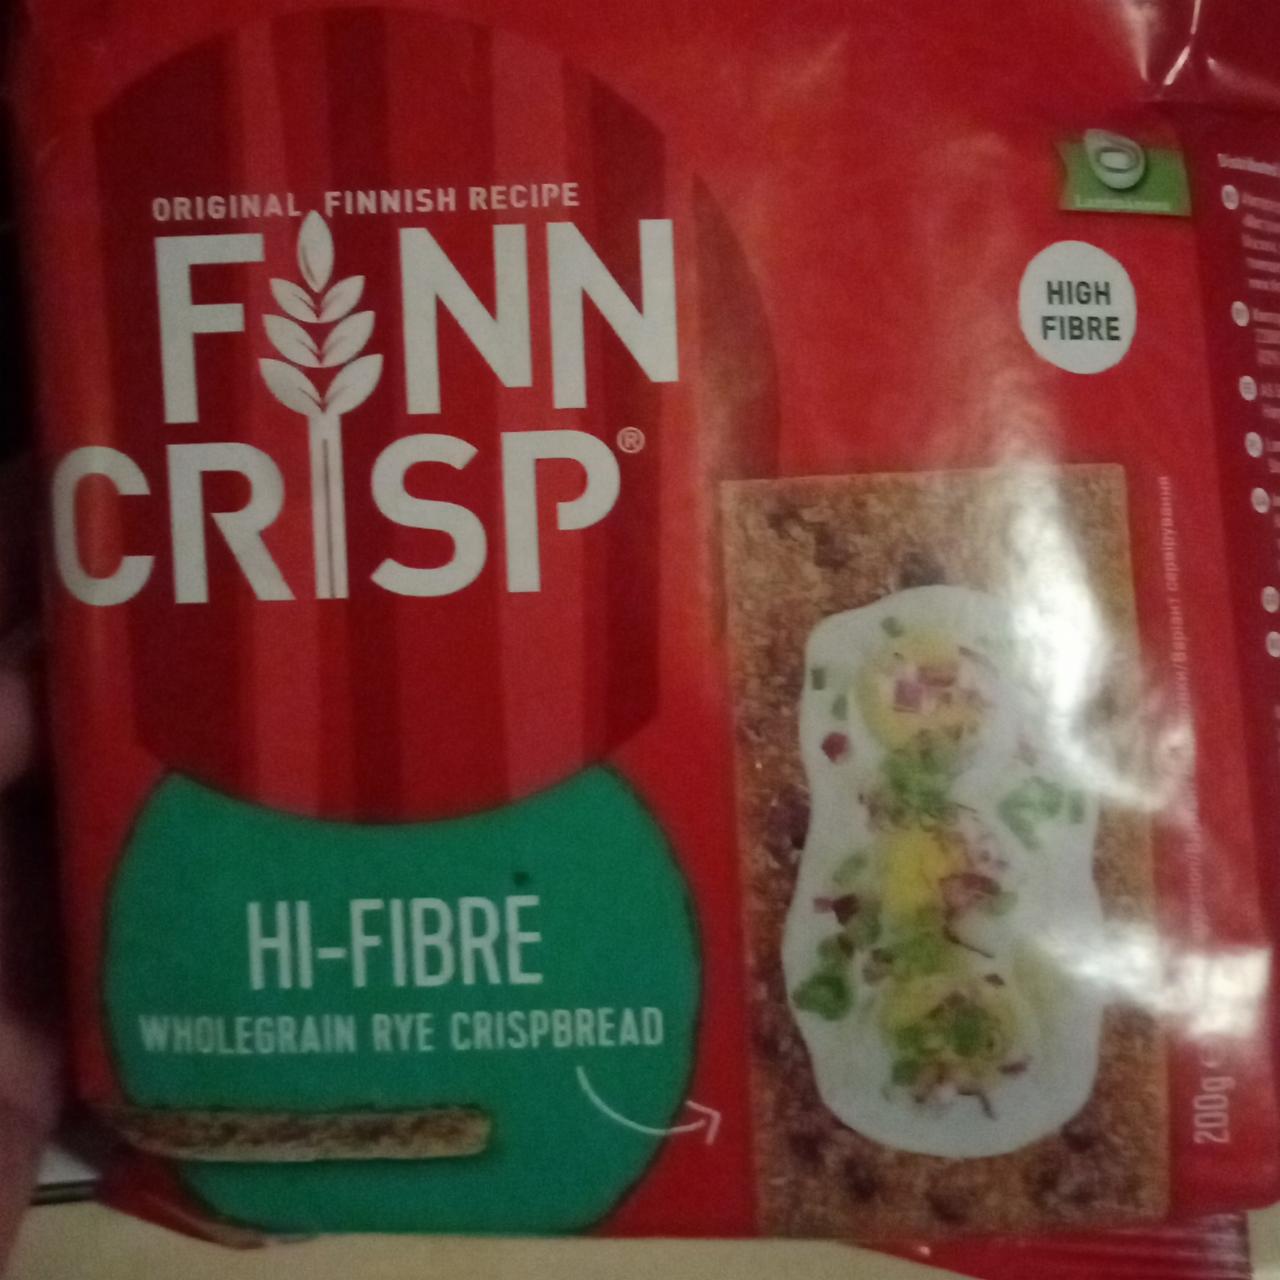 Фото - Цільнозернові житні хлібці Hi-fibre Finn Crisp